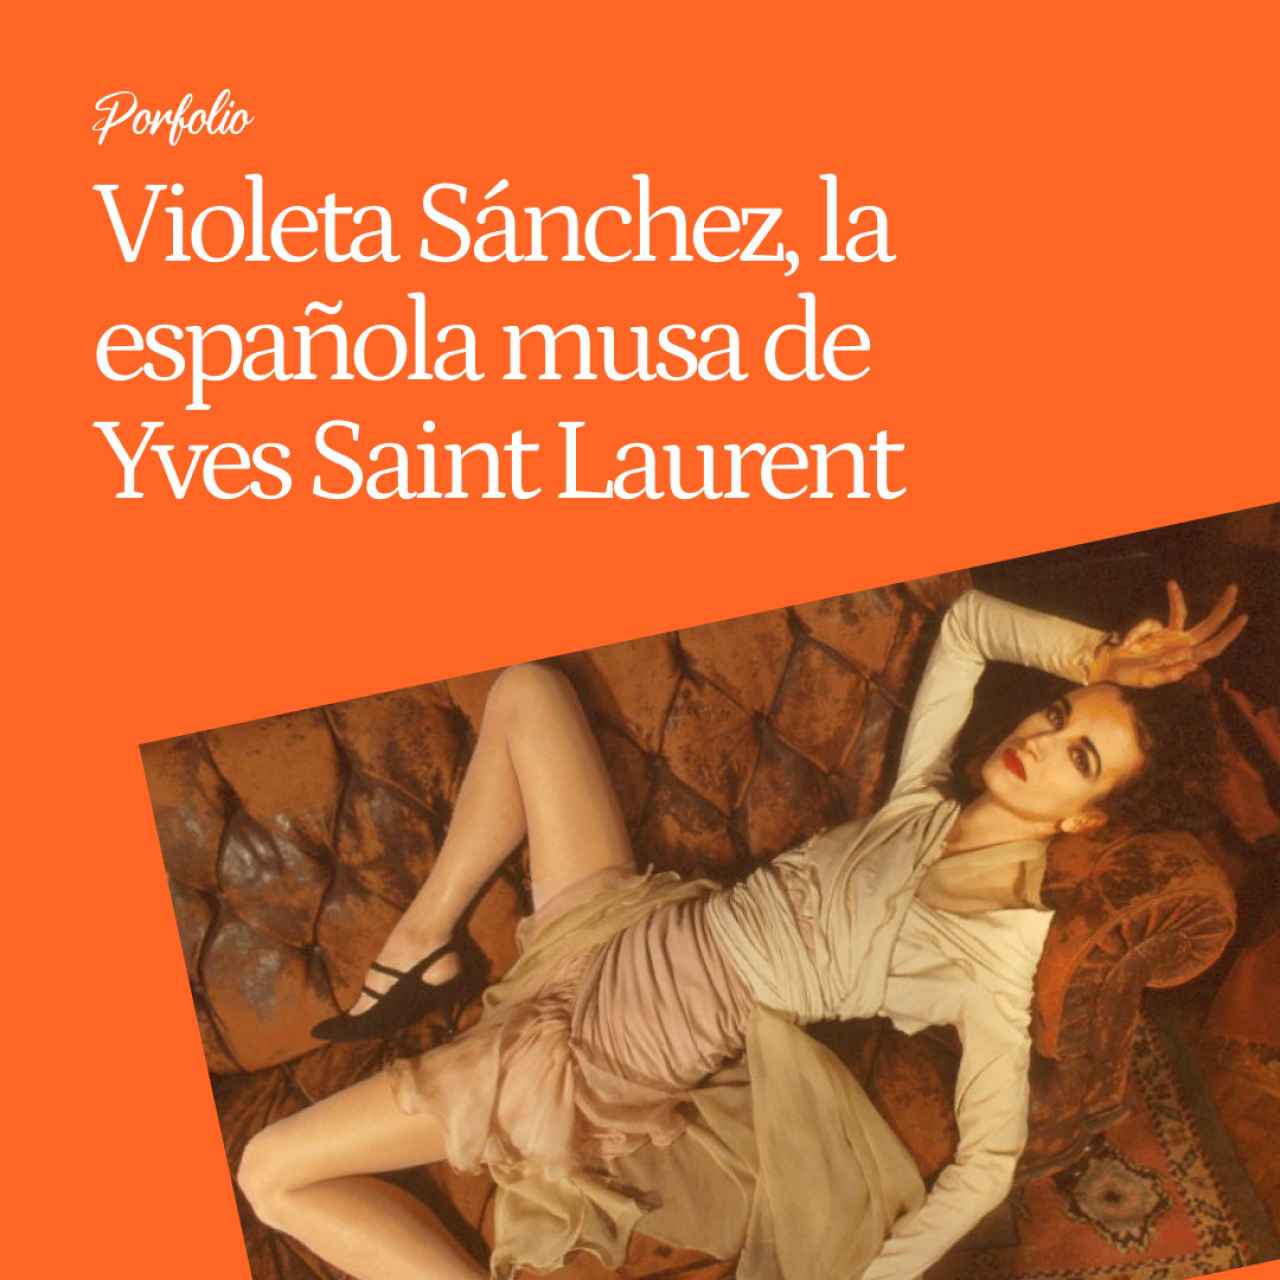 Violeta Sánchez, la 'top' española musa de Yves Saint Laurent en París que es de hija un superviviente de un campo de concentración